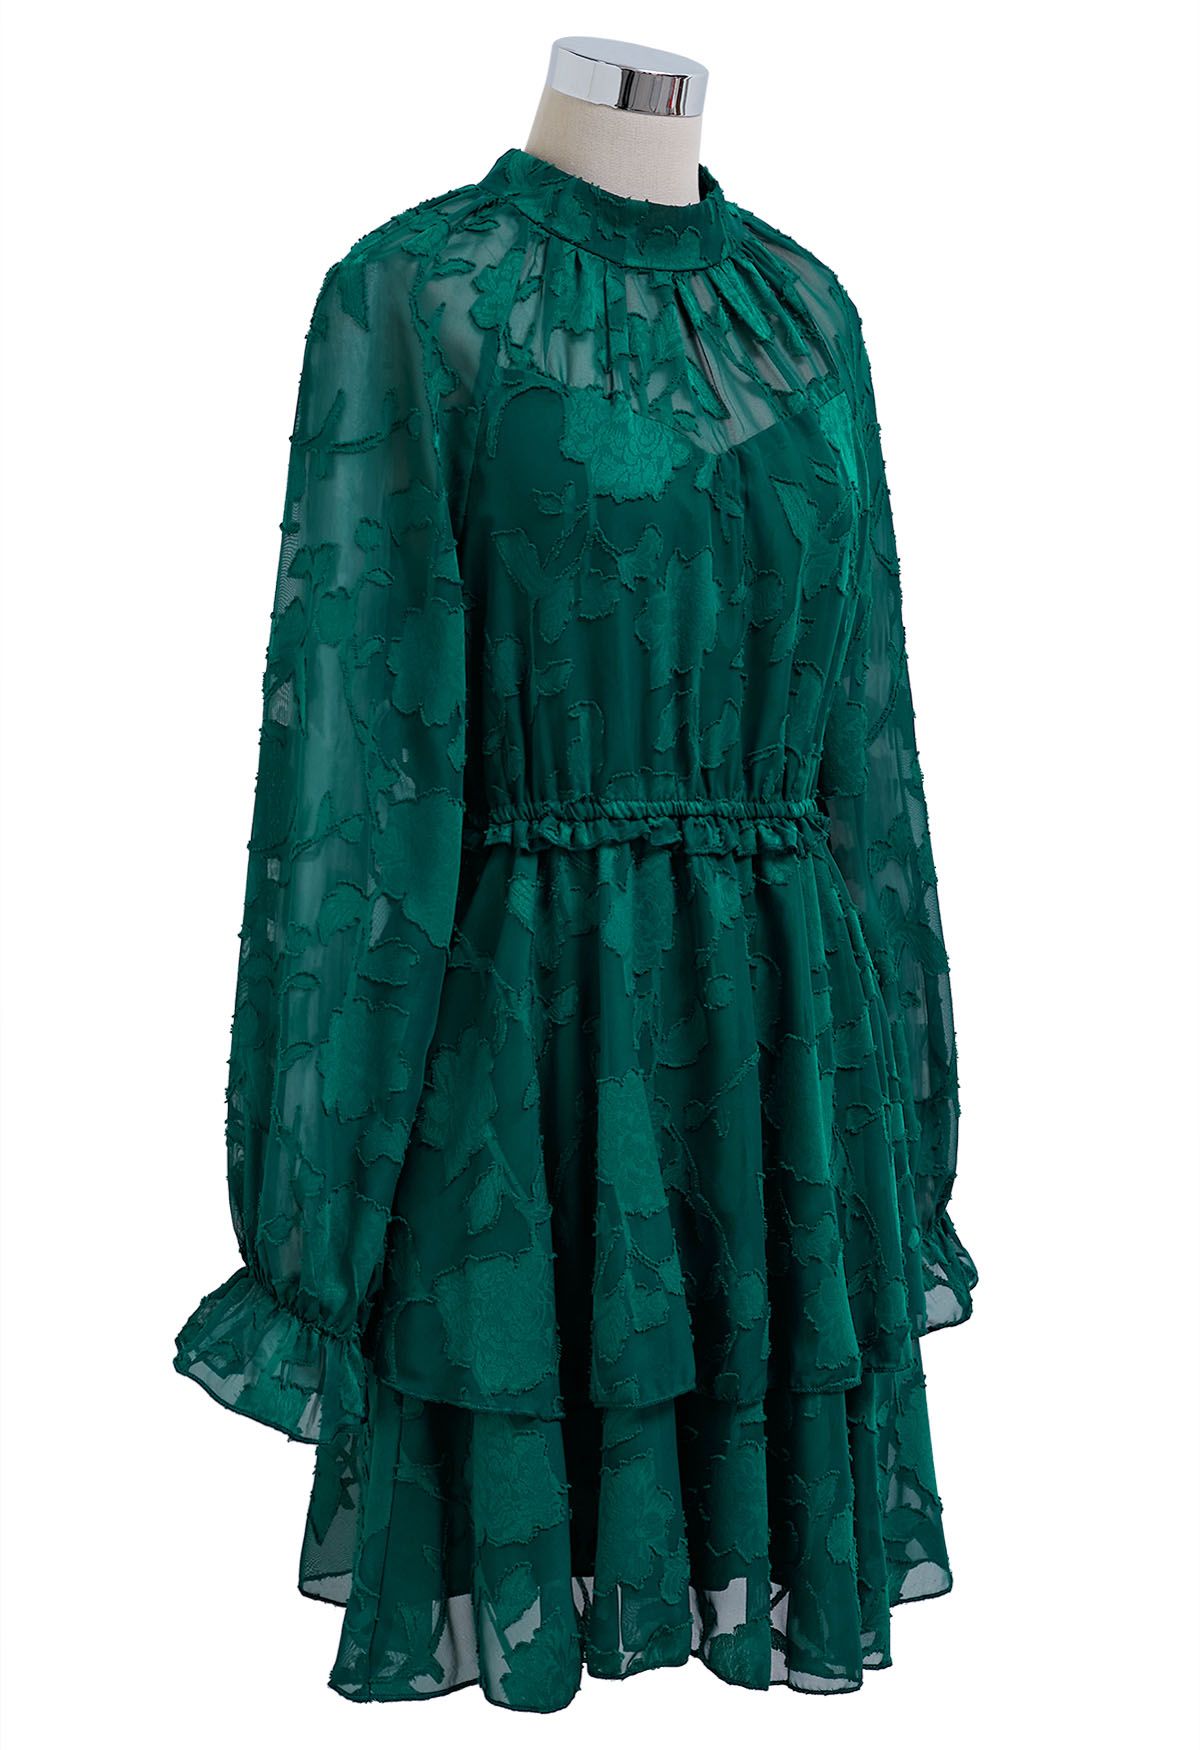 Vestido corto de malla en jacquard floral esmeralda